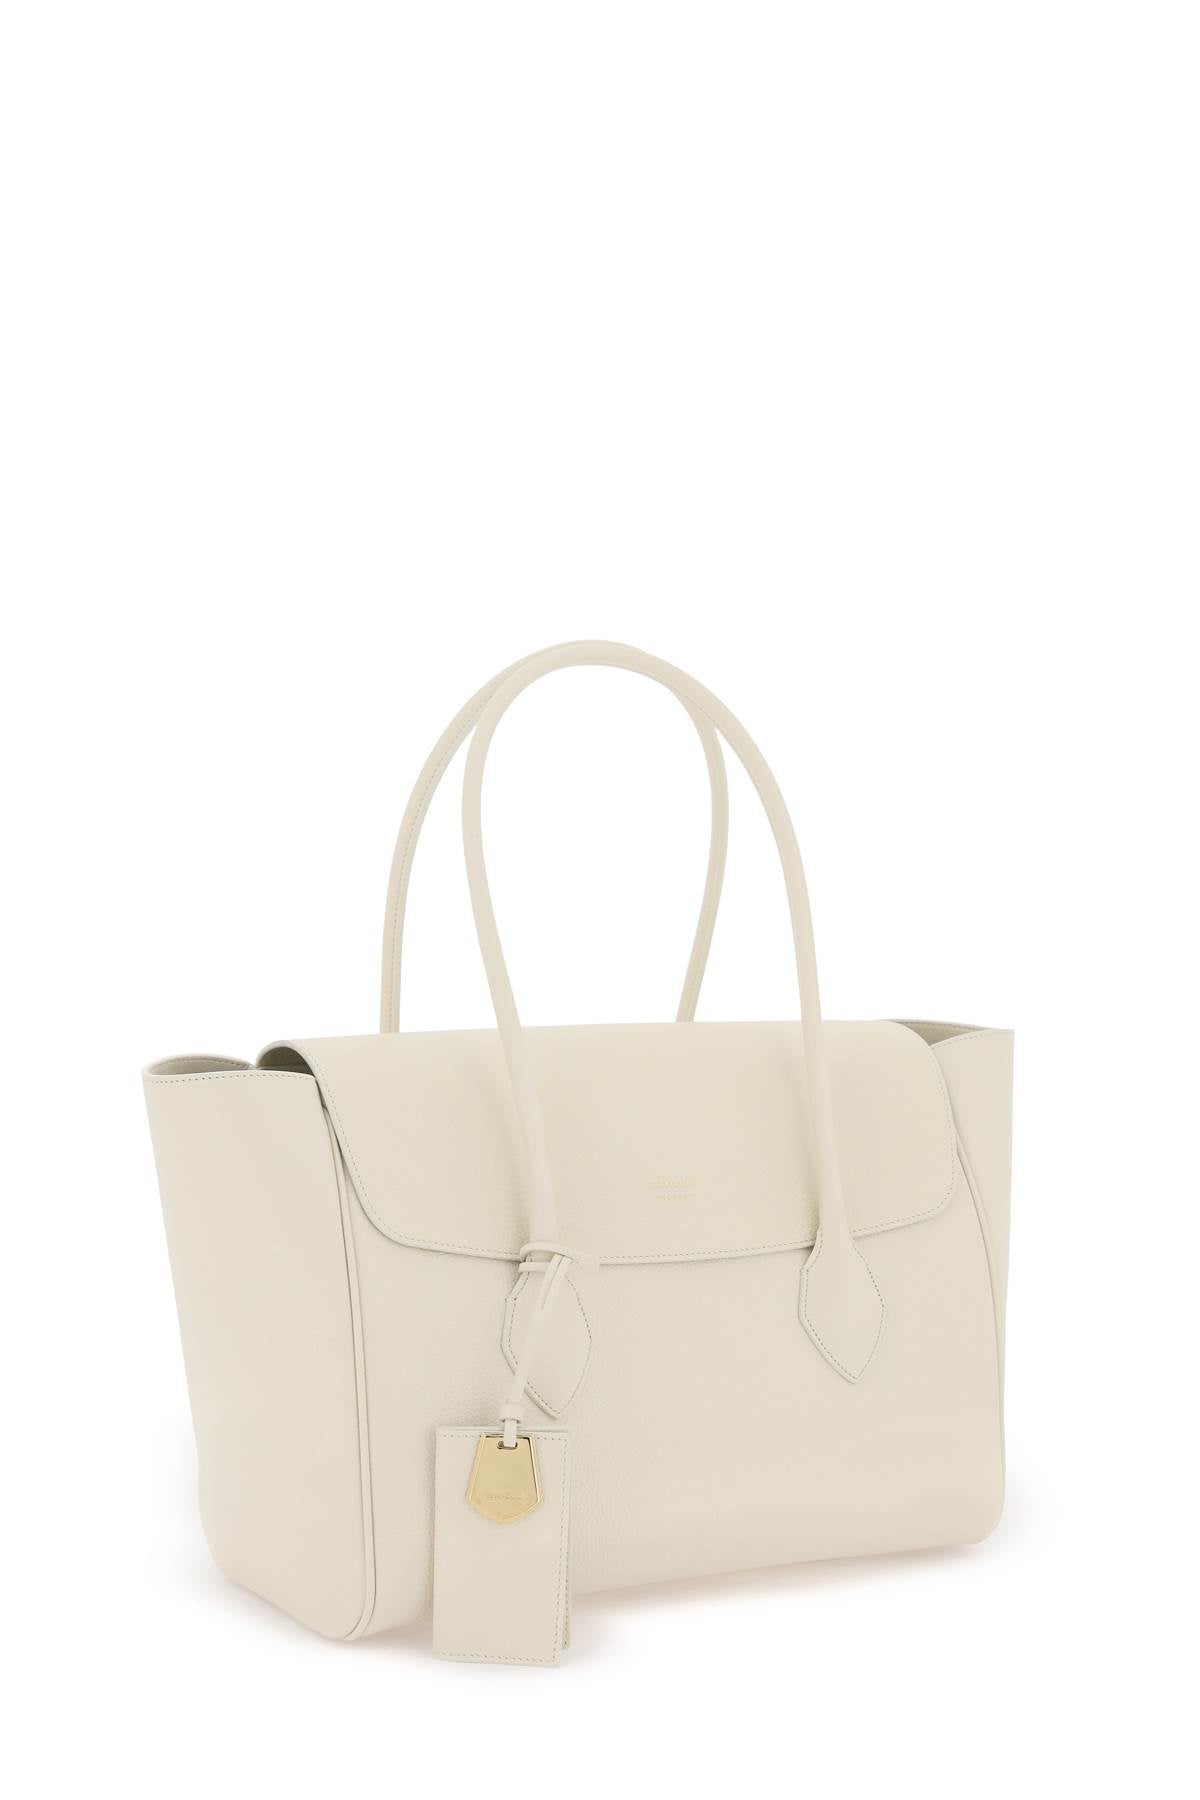 高贵白色女性手提包，采用小牛皮制成，镶有金色字母和绒面内衬